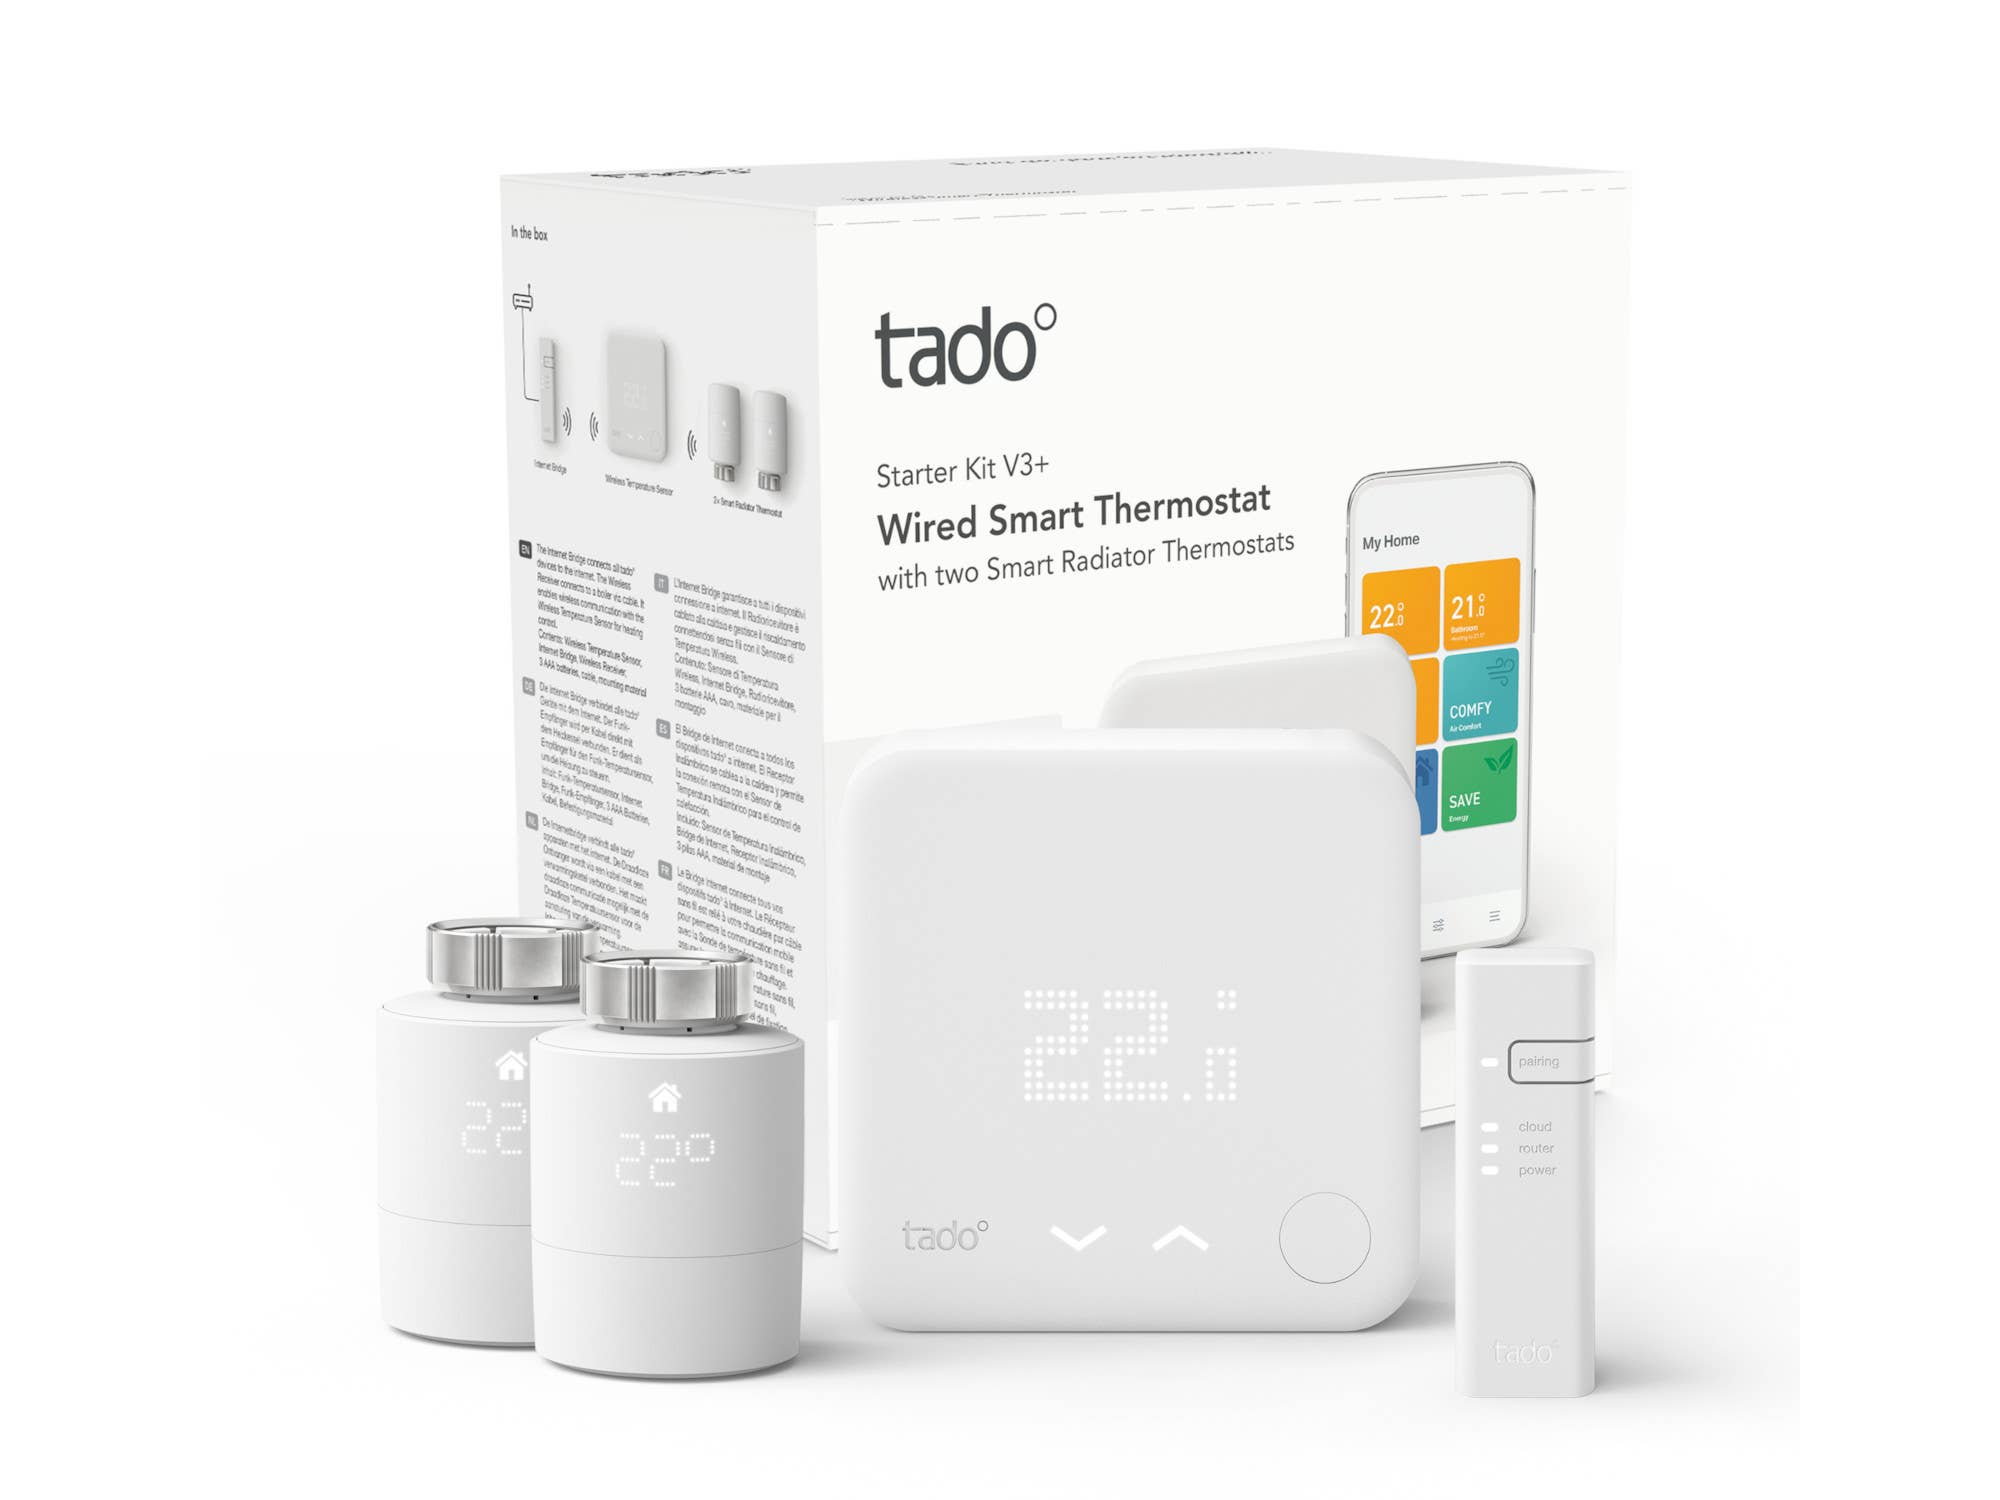 Tado bestraft eigene Smart-Home-Kunden: Kein Upgrade möglich